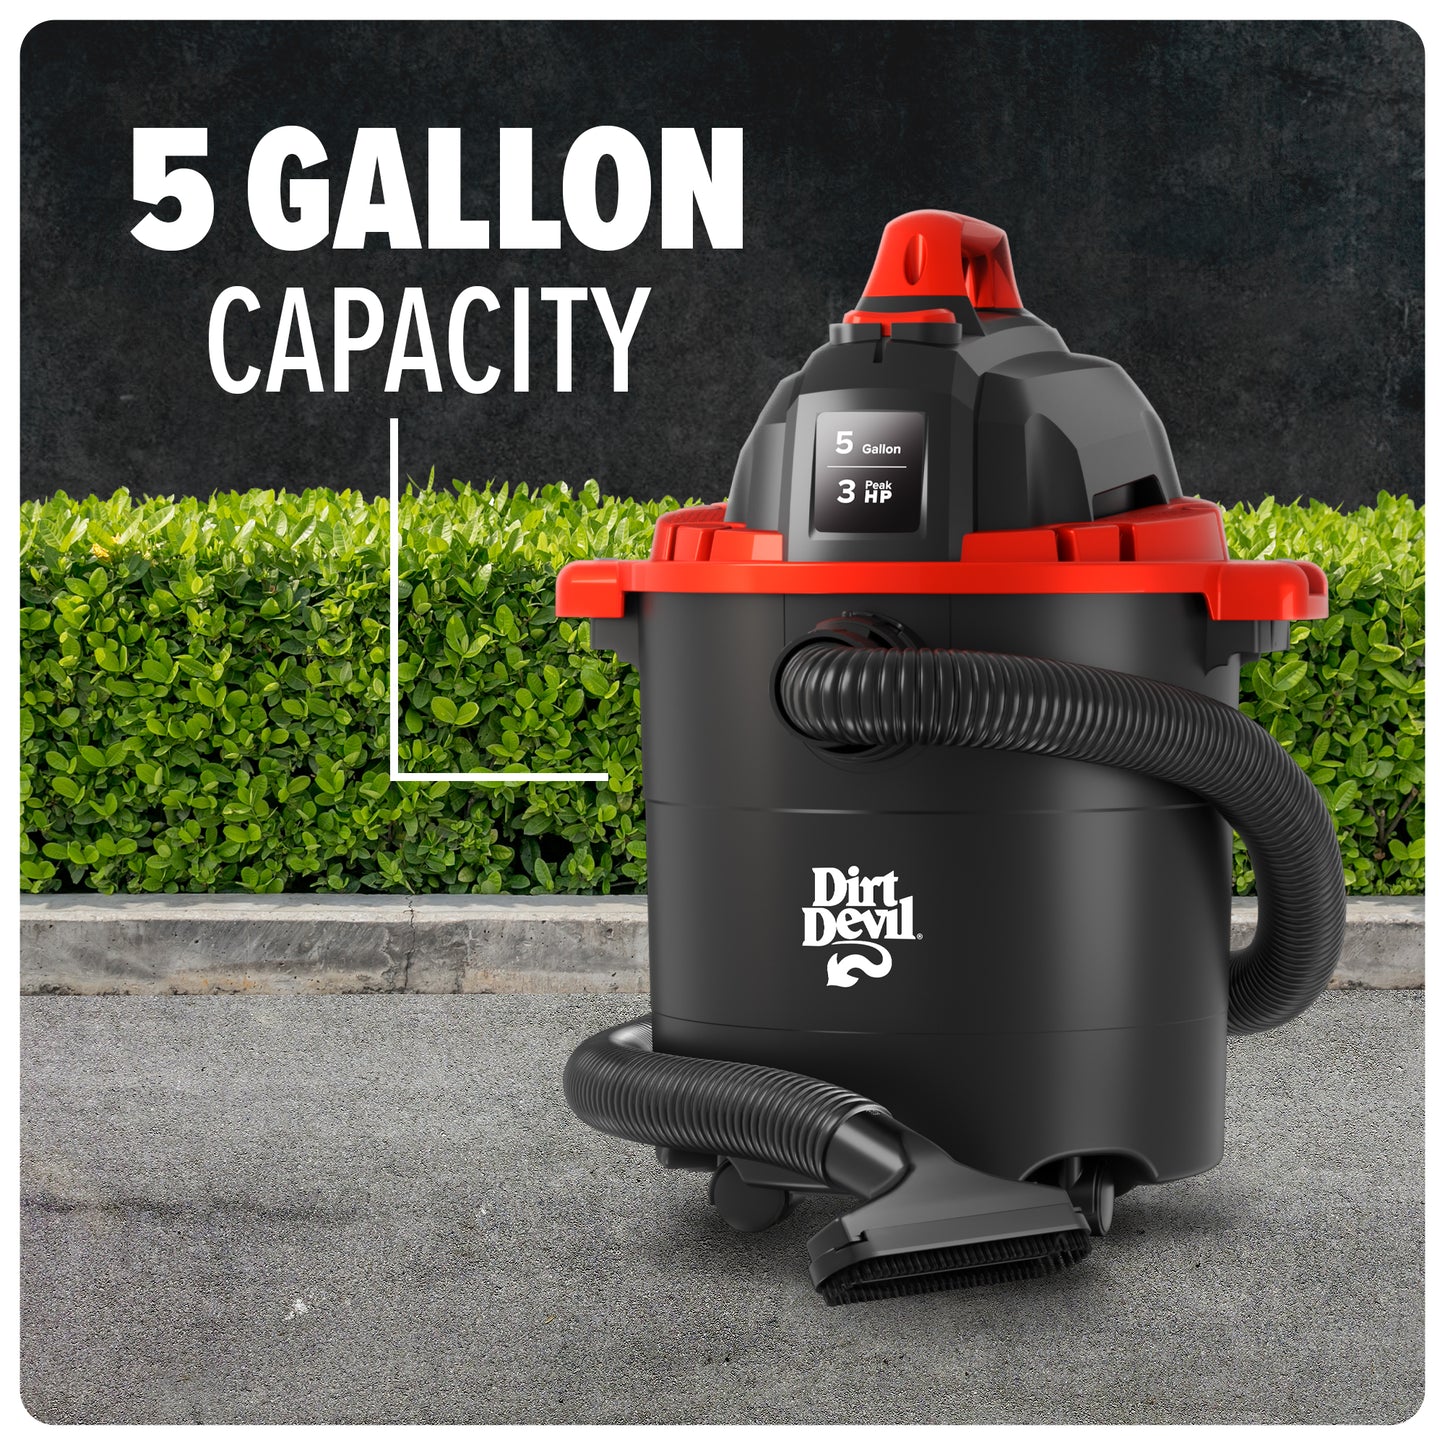 5 Gallon Wet/Dry Vacuum